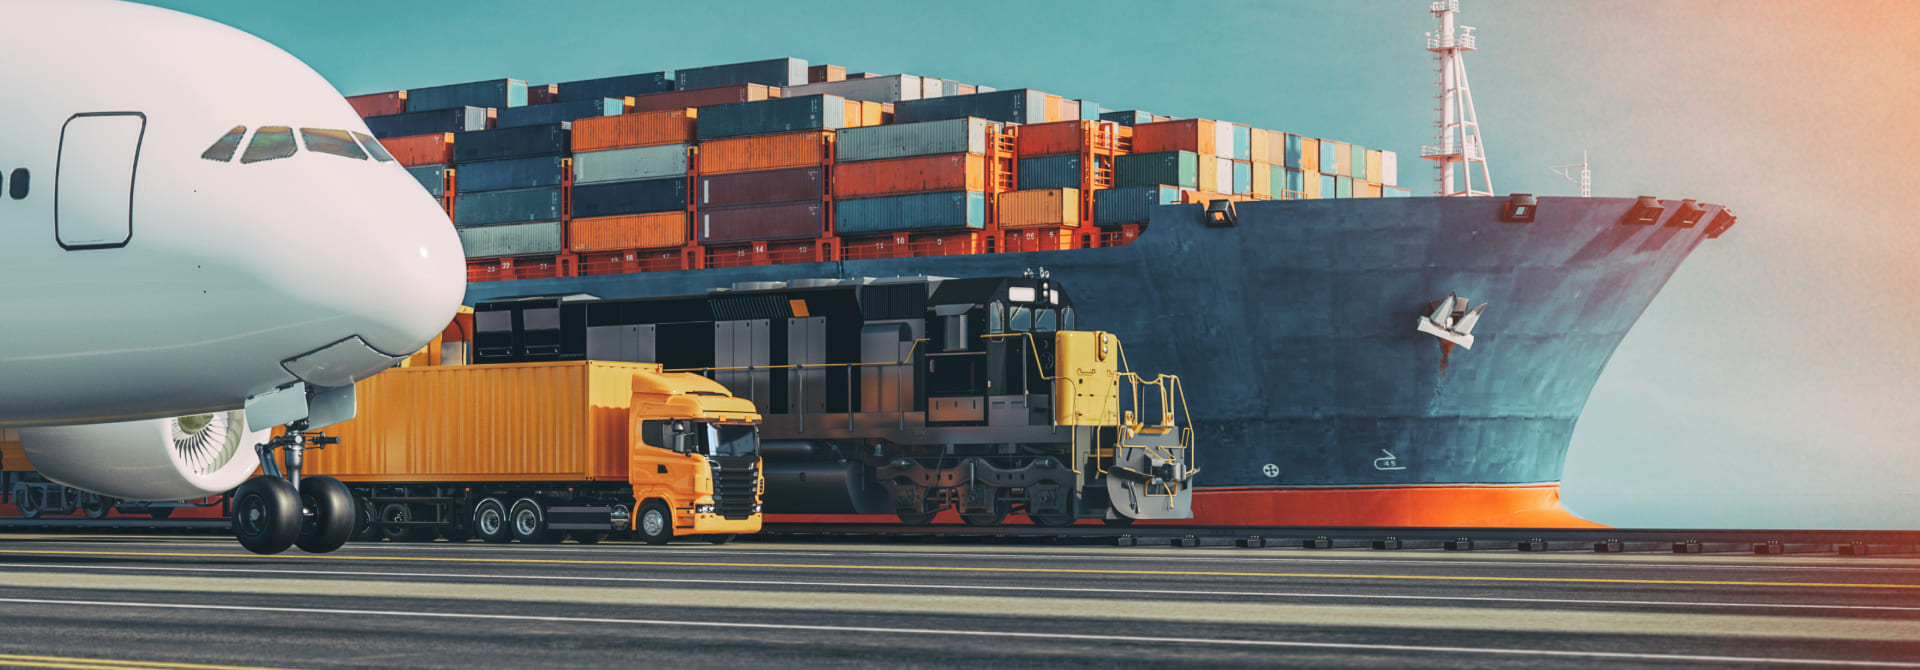 Foto ilustrativa de um porto com um navio atracado, junto com um trem, um caminhão e um avião estacionados.